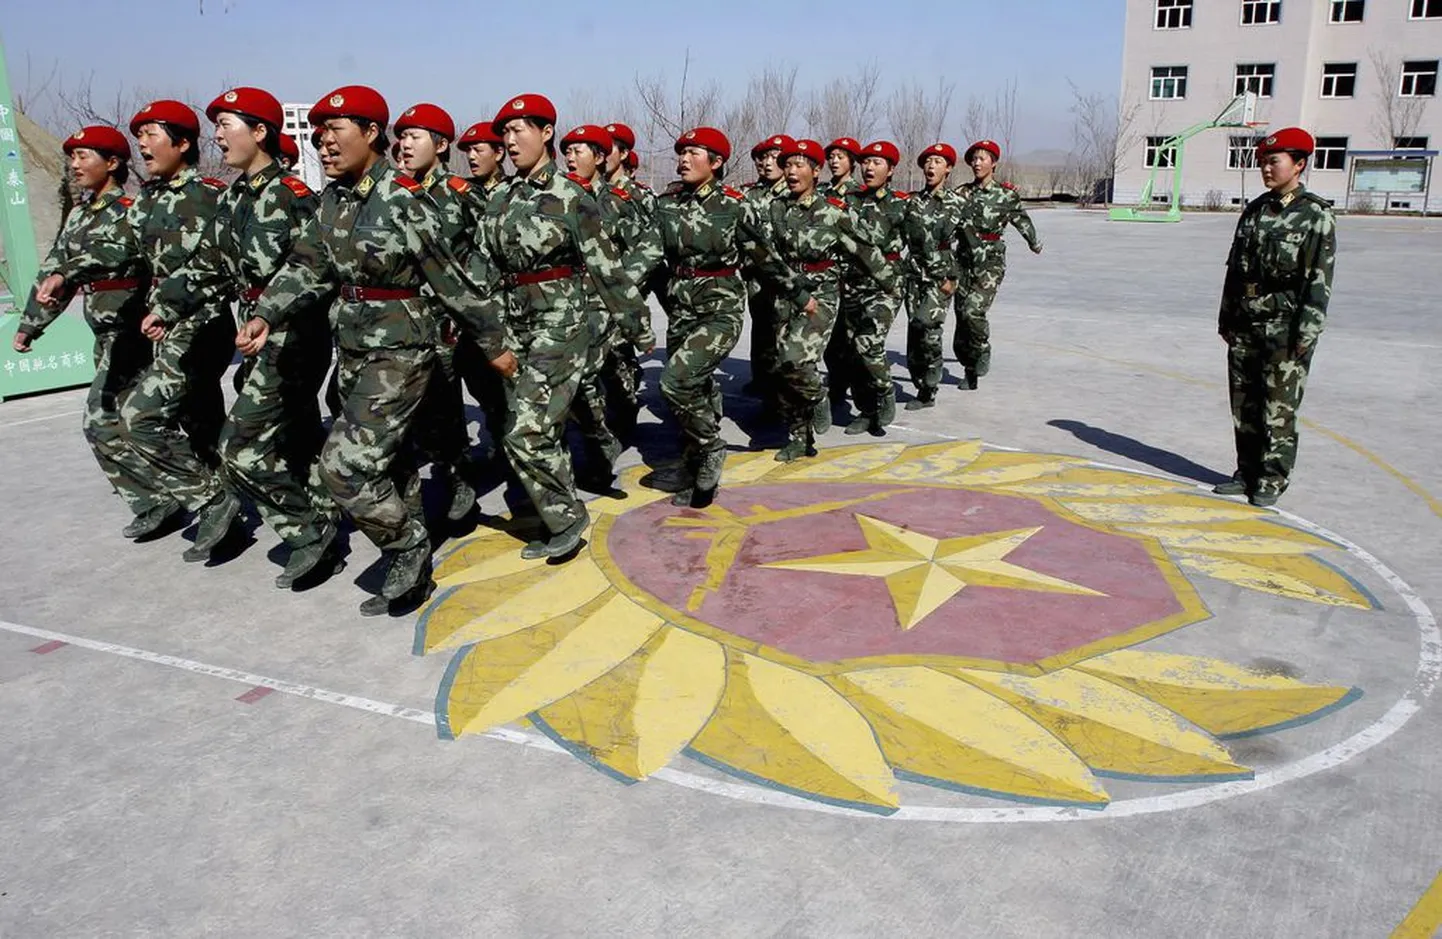 Hiina paramilitaarsed politseinikud uiguuride autonoomses regioonis Xinjiangi provintsis..